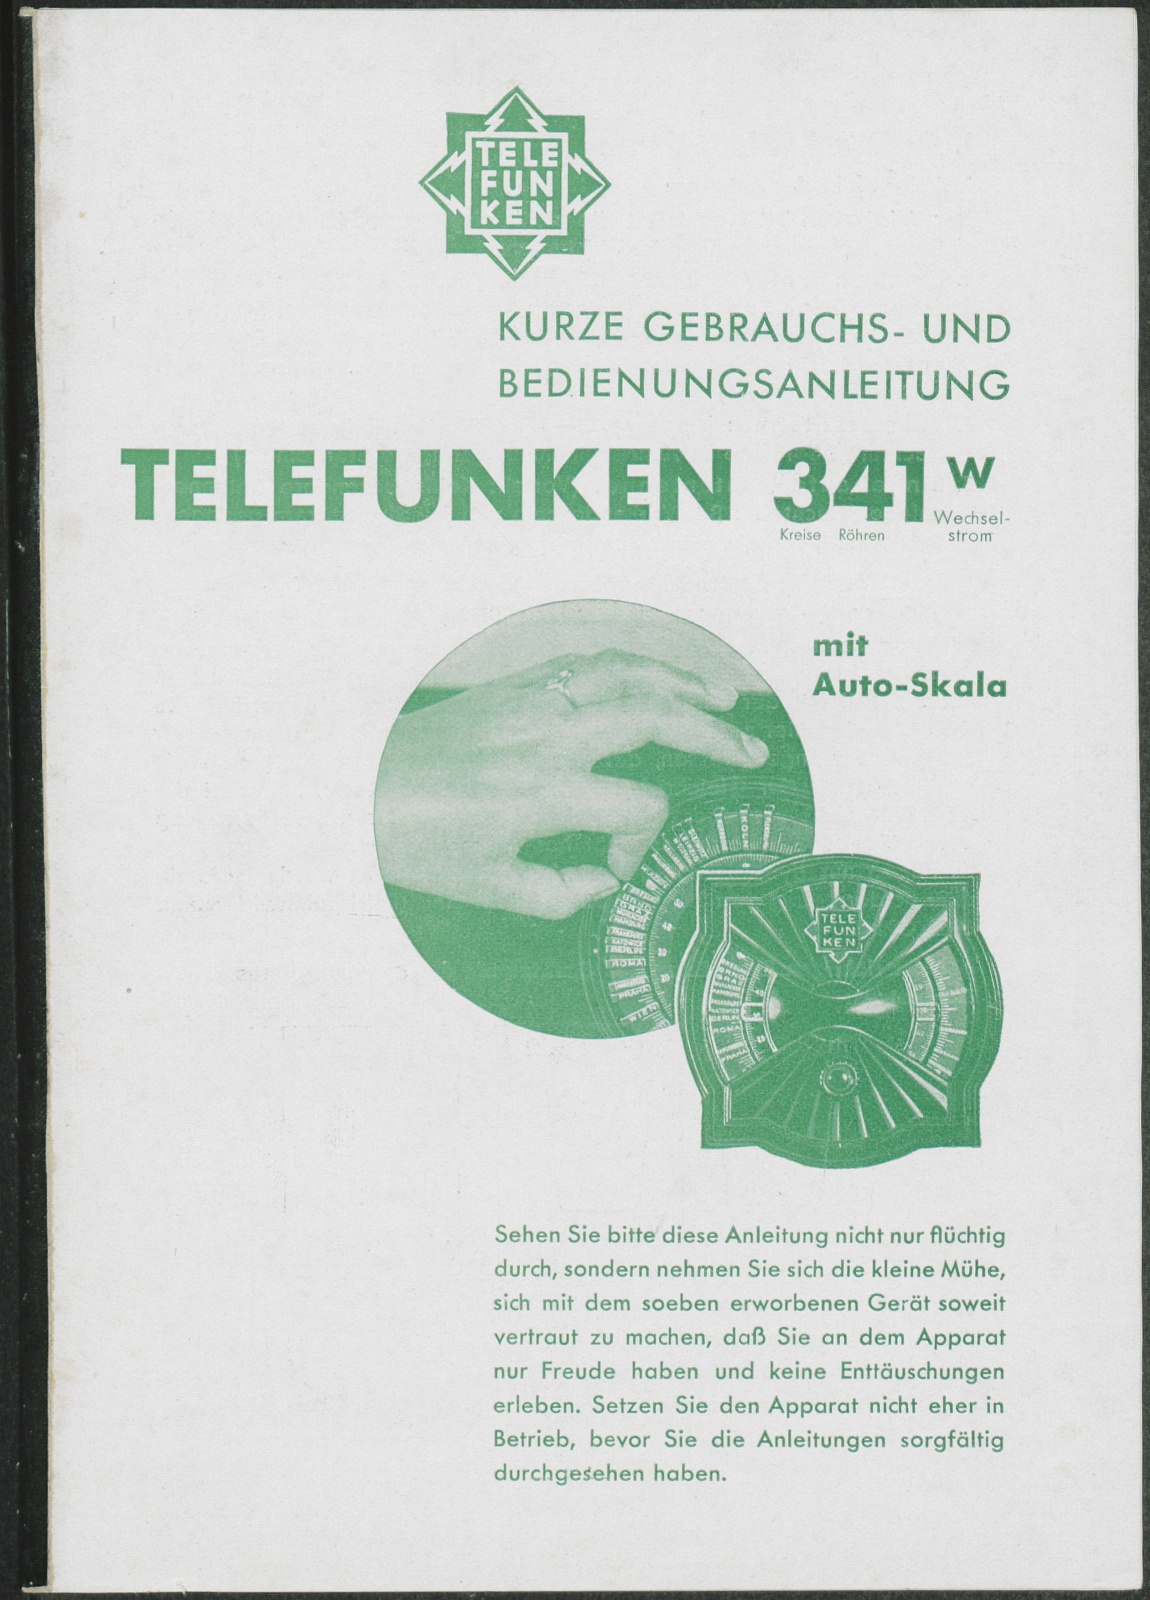 Bedienungsanleitung: Kurze Gebrauchs- und Bedienungsanleitung Telefunken 341 W mit Auto-Skala (Stiftung Deutsches Technikmuseum Berlin CC0)